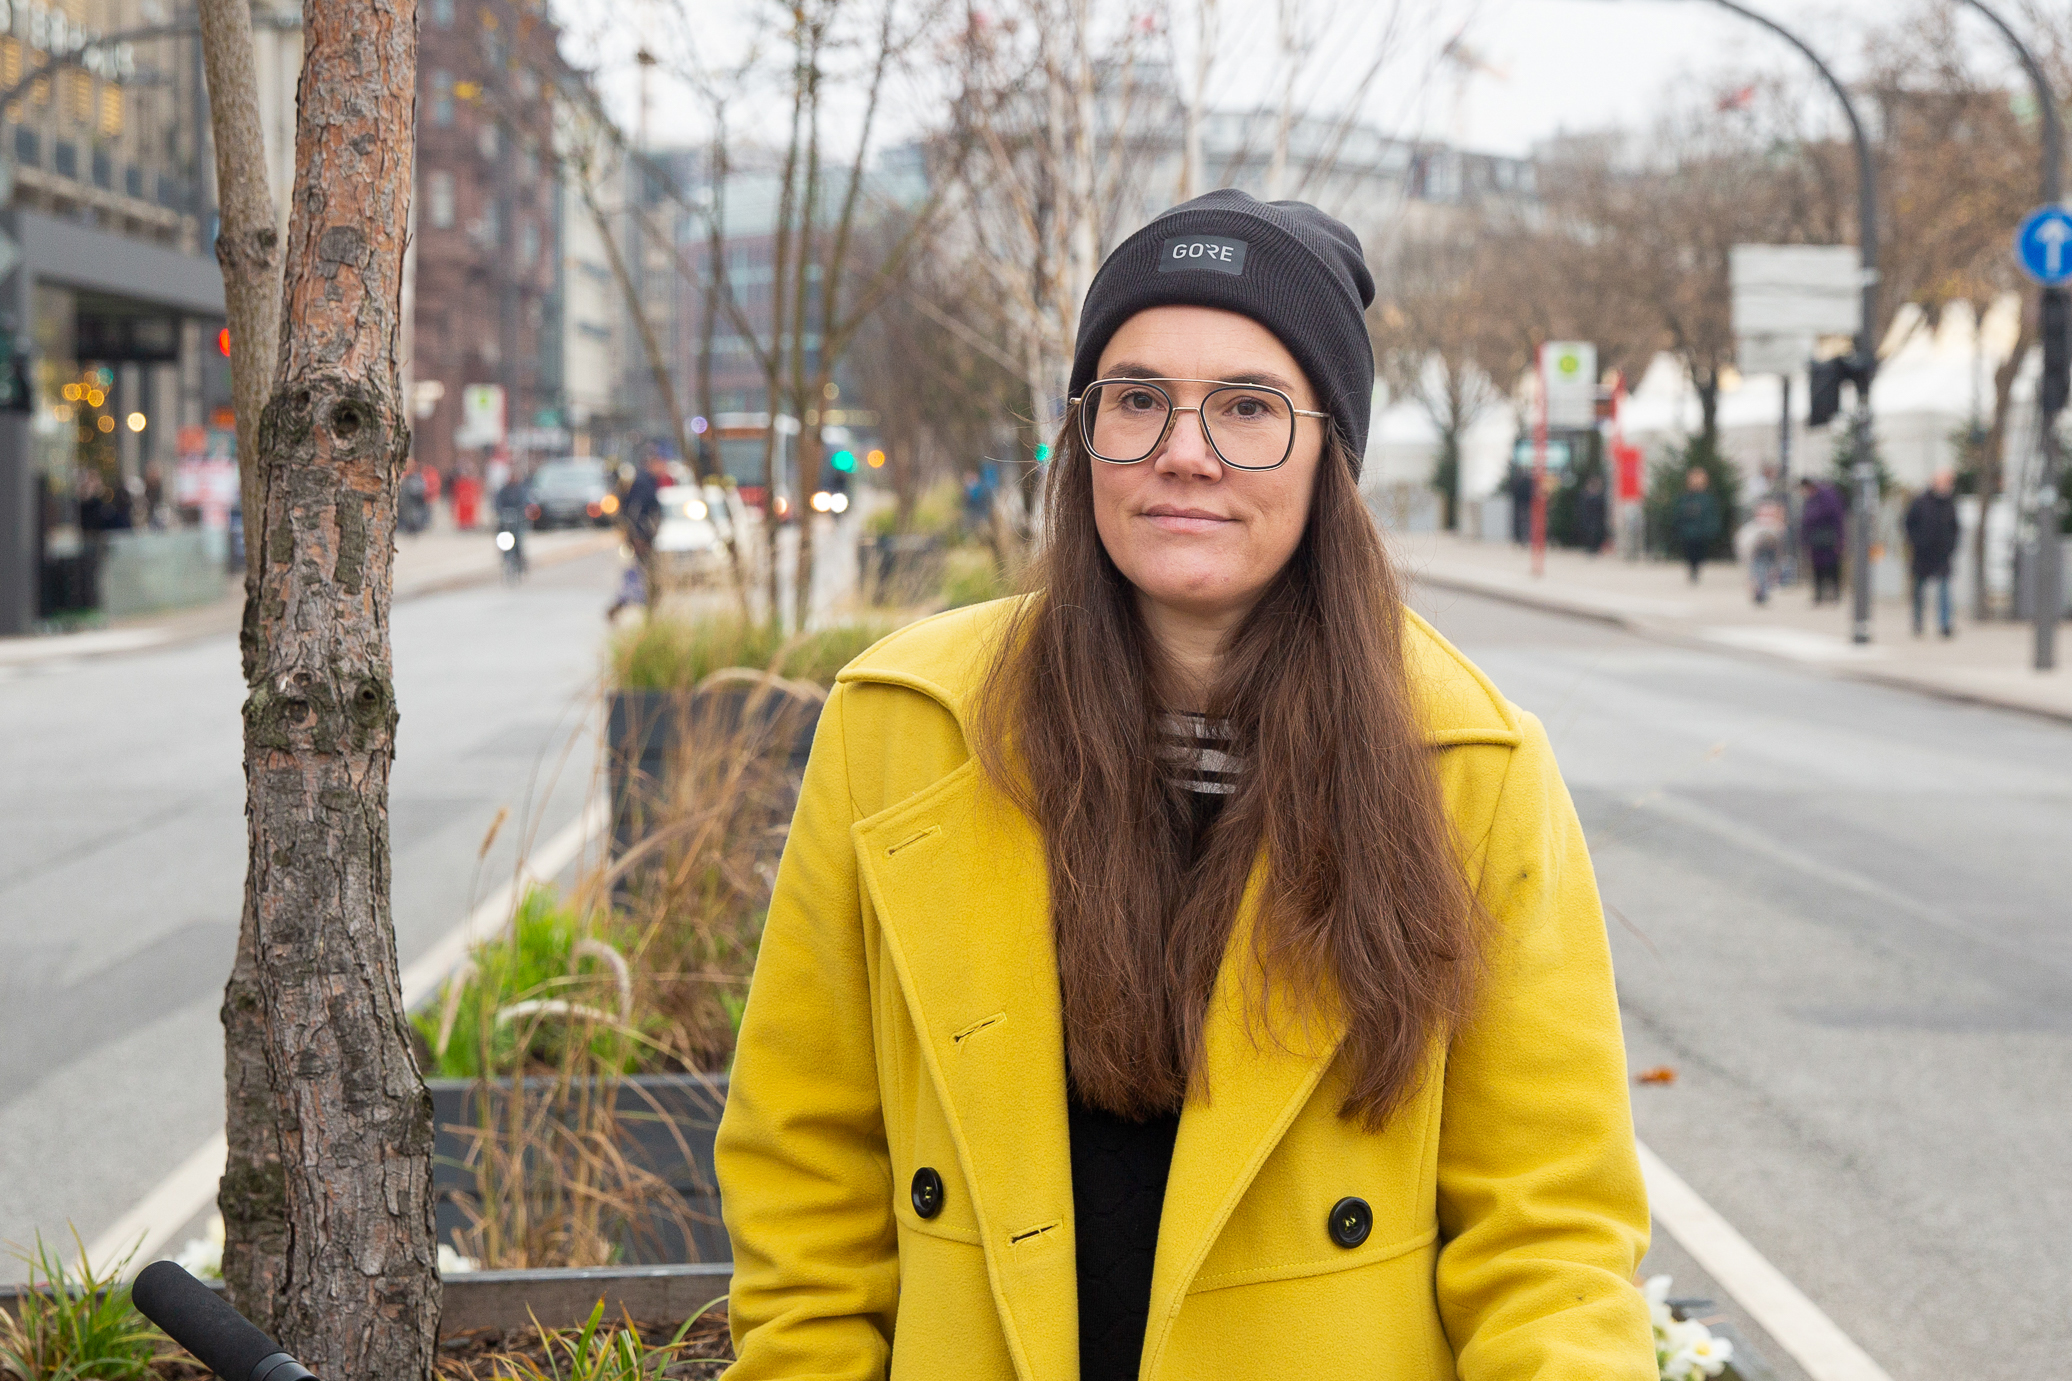 Auf einer städtischen Verkehrsinsel steht eine Frau mit Mütze und in gelbem Mantel und schaut ernst in die Kamera.